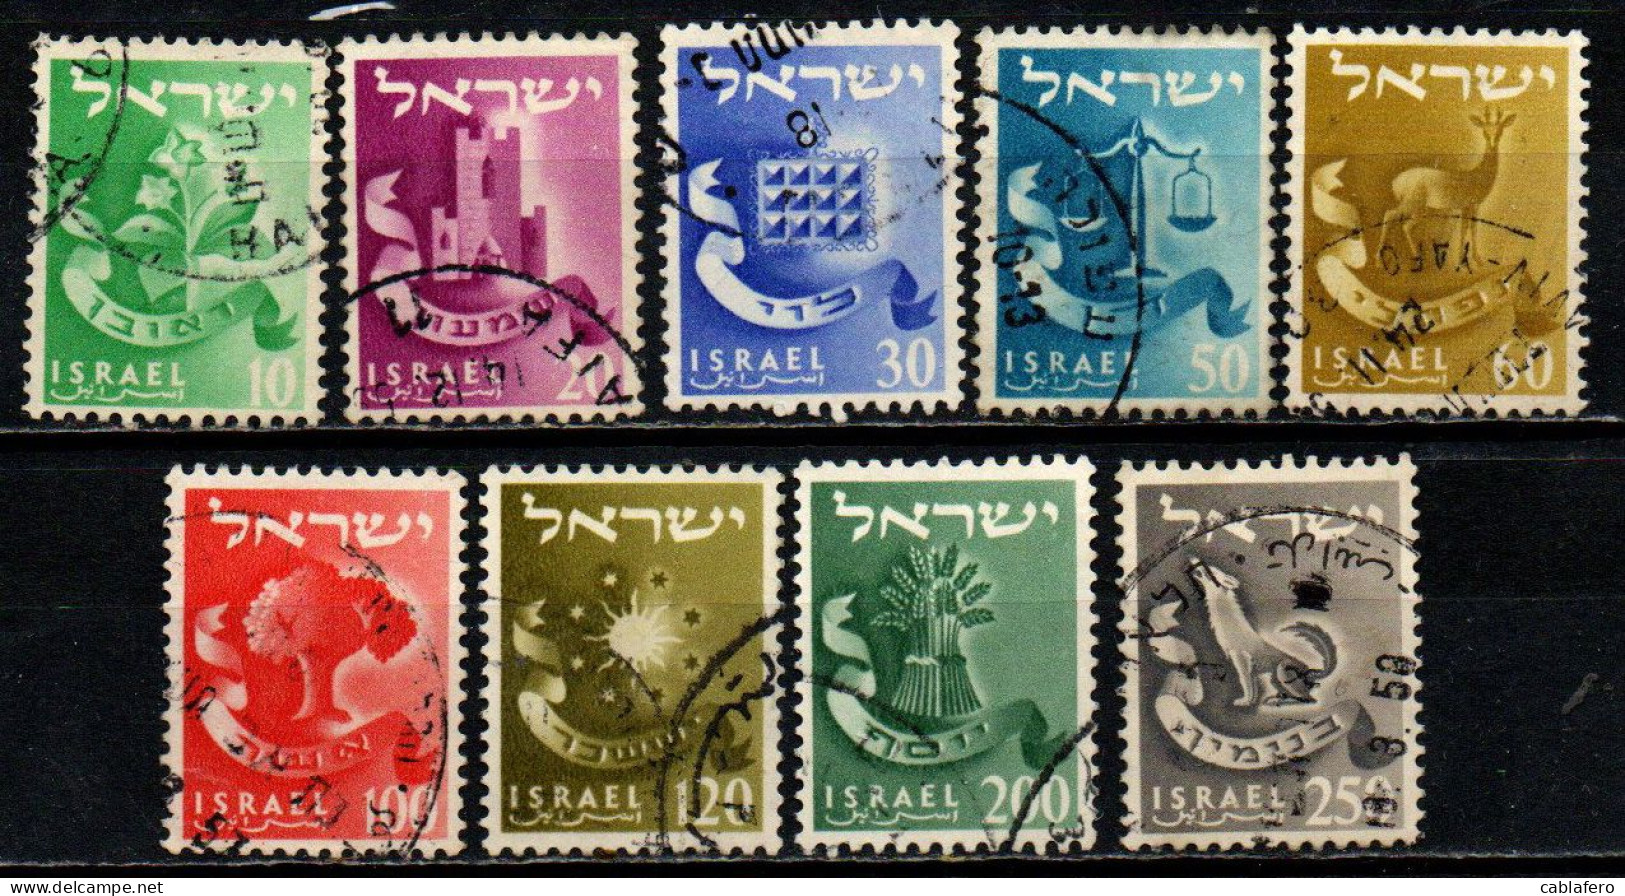 ISRAELE - 1955 - Twelve Tribes - USATI - Usati (senza Tab)